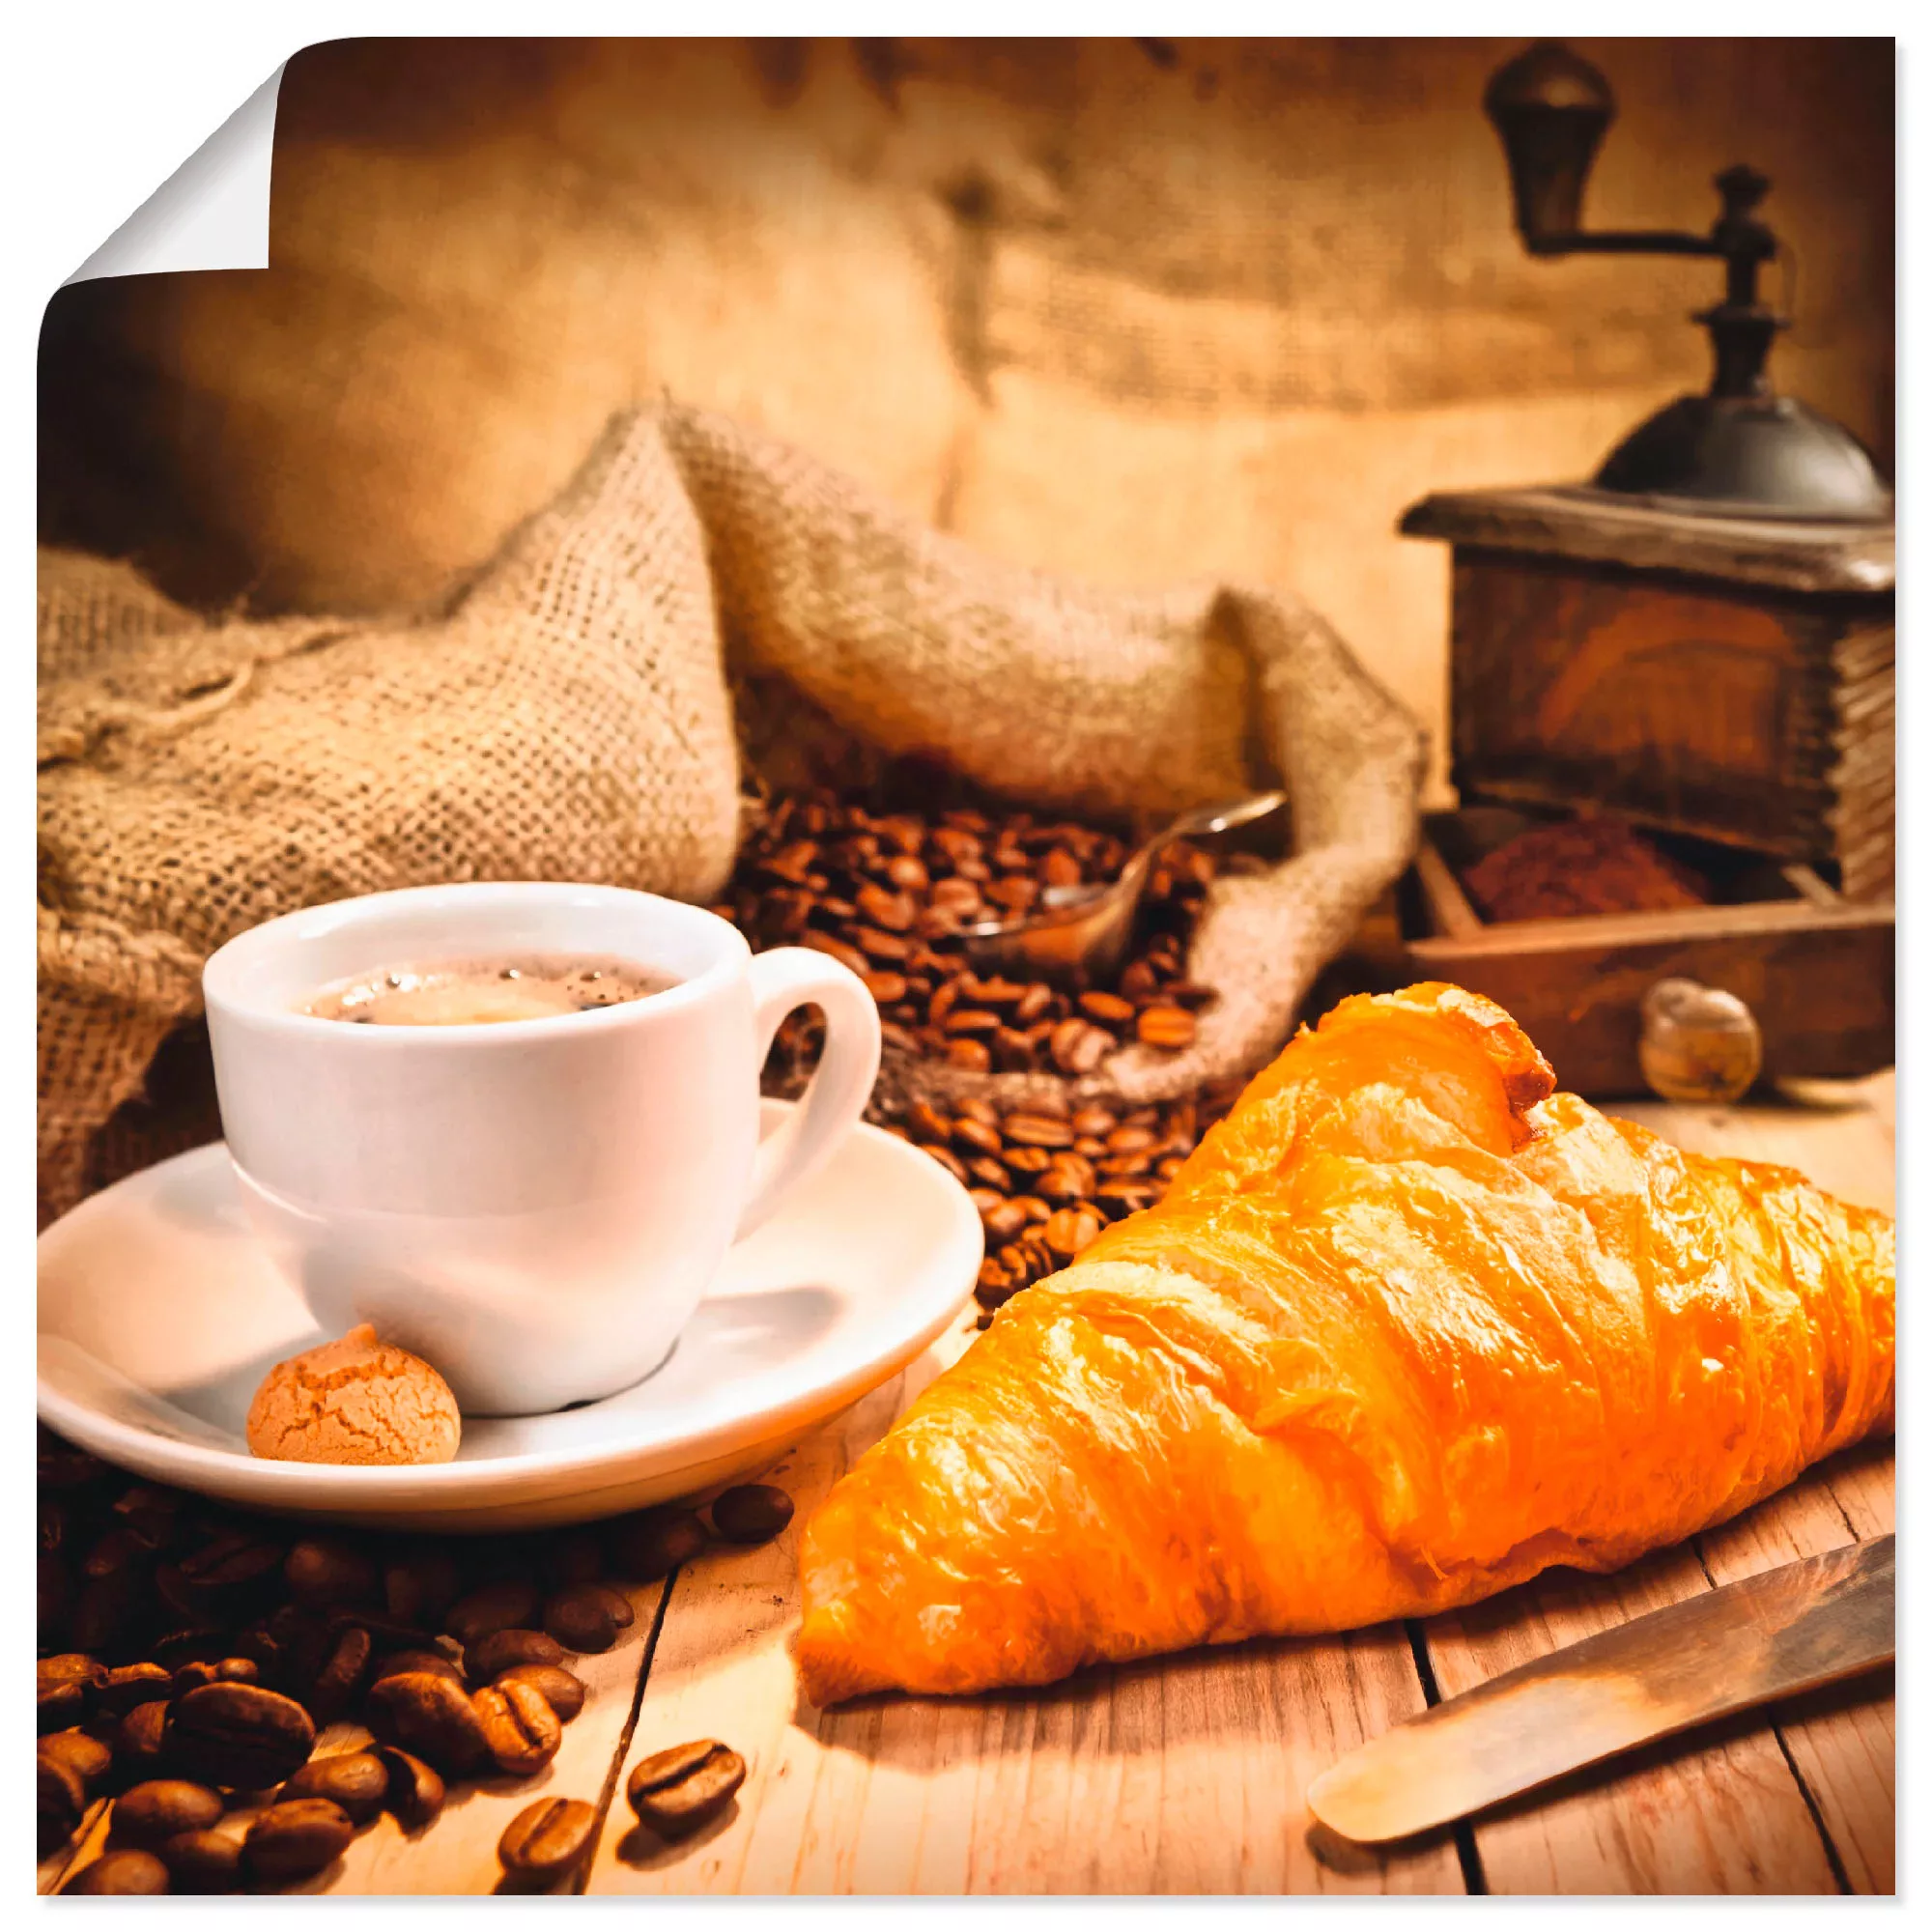 Artland Wandbild »Kaffeetasse mit Croissant«, Getränke, (1 St.), als Leinwa günstig online kaufen